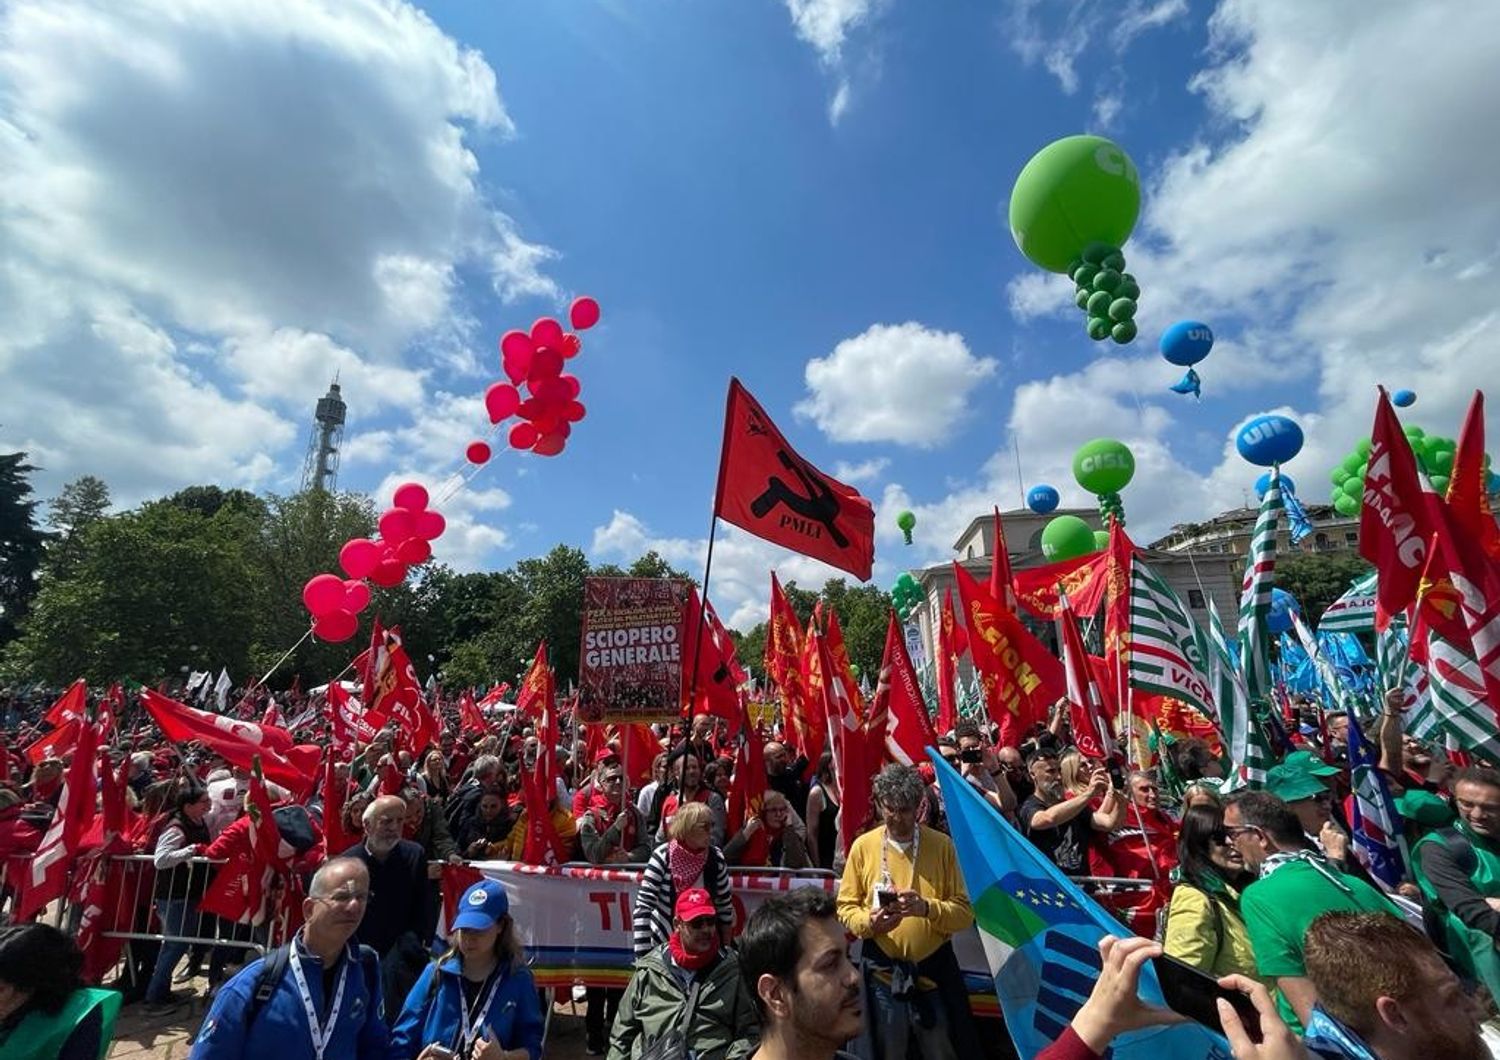 sindacati a milano in piazza contro lavoro precarizzato